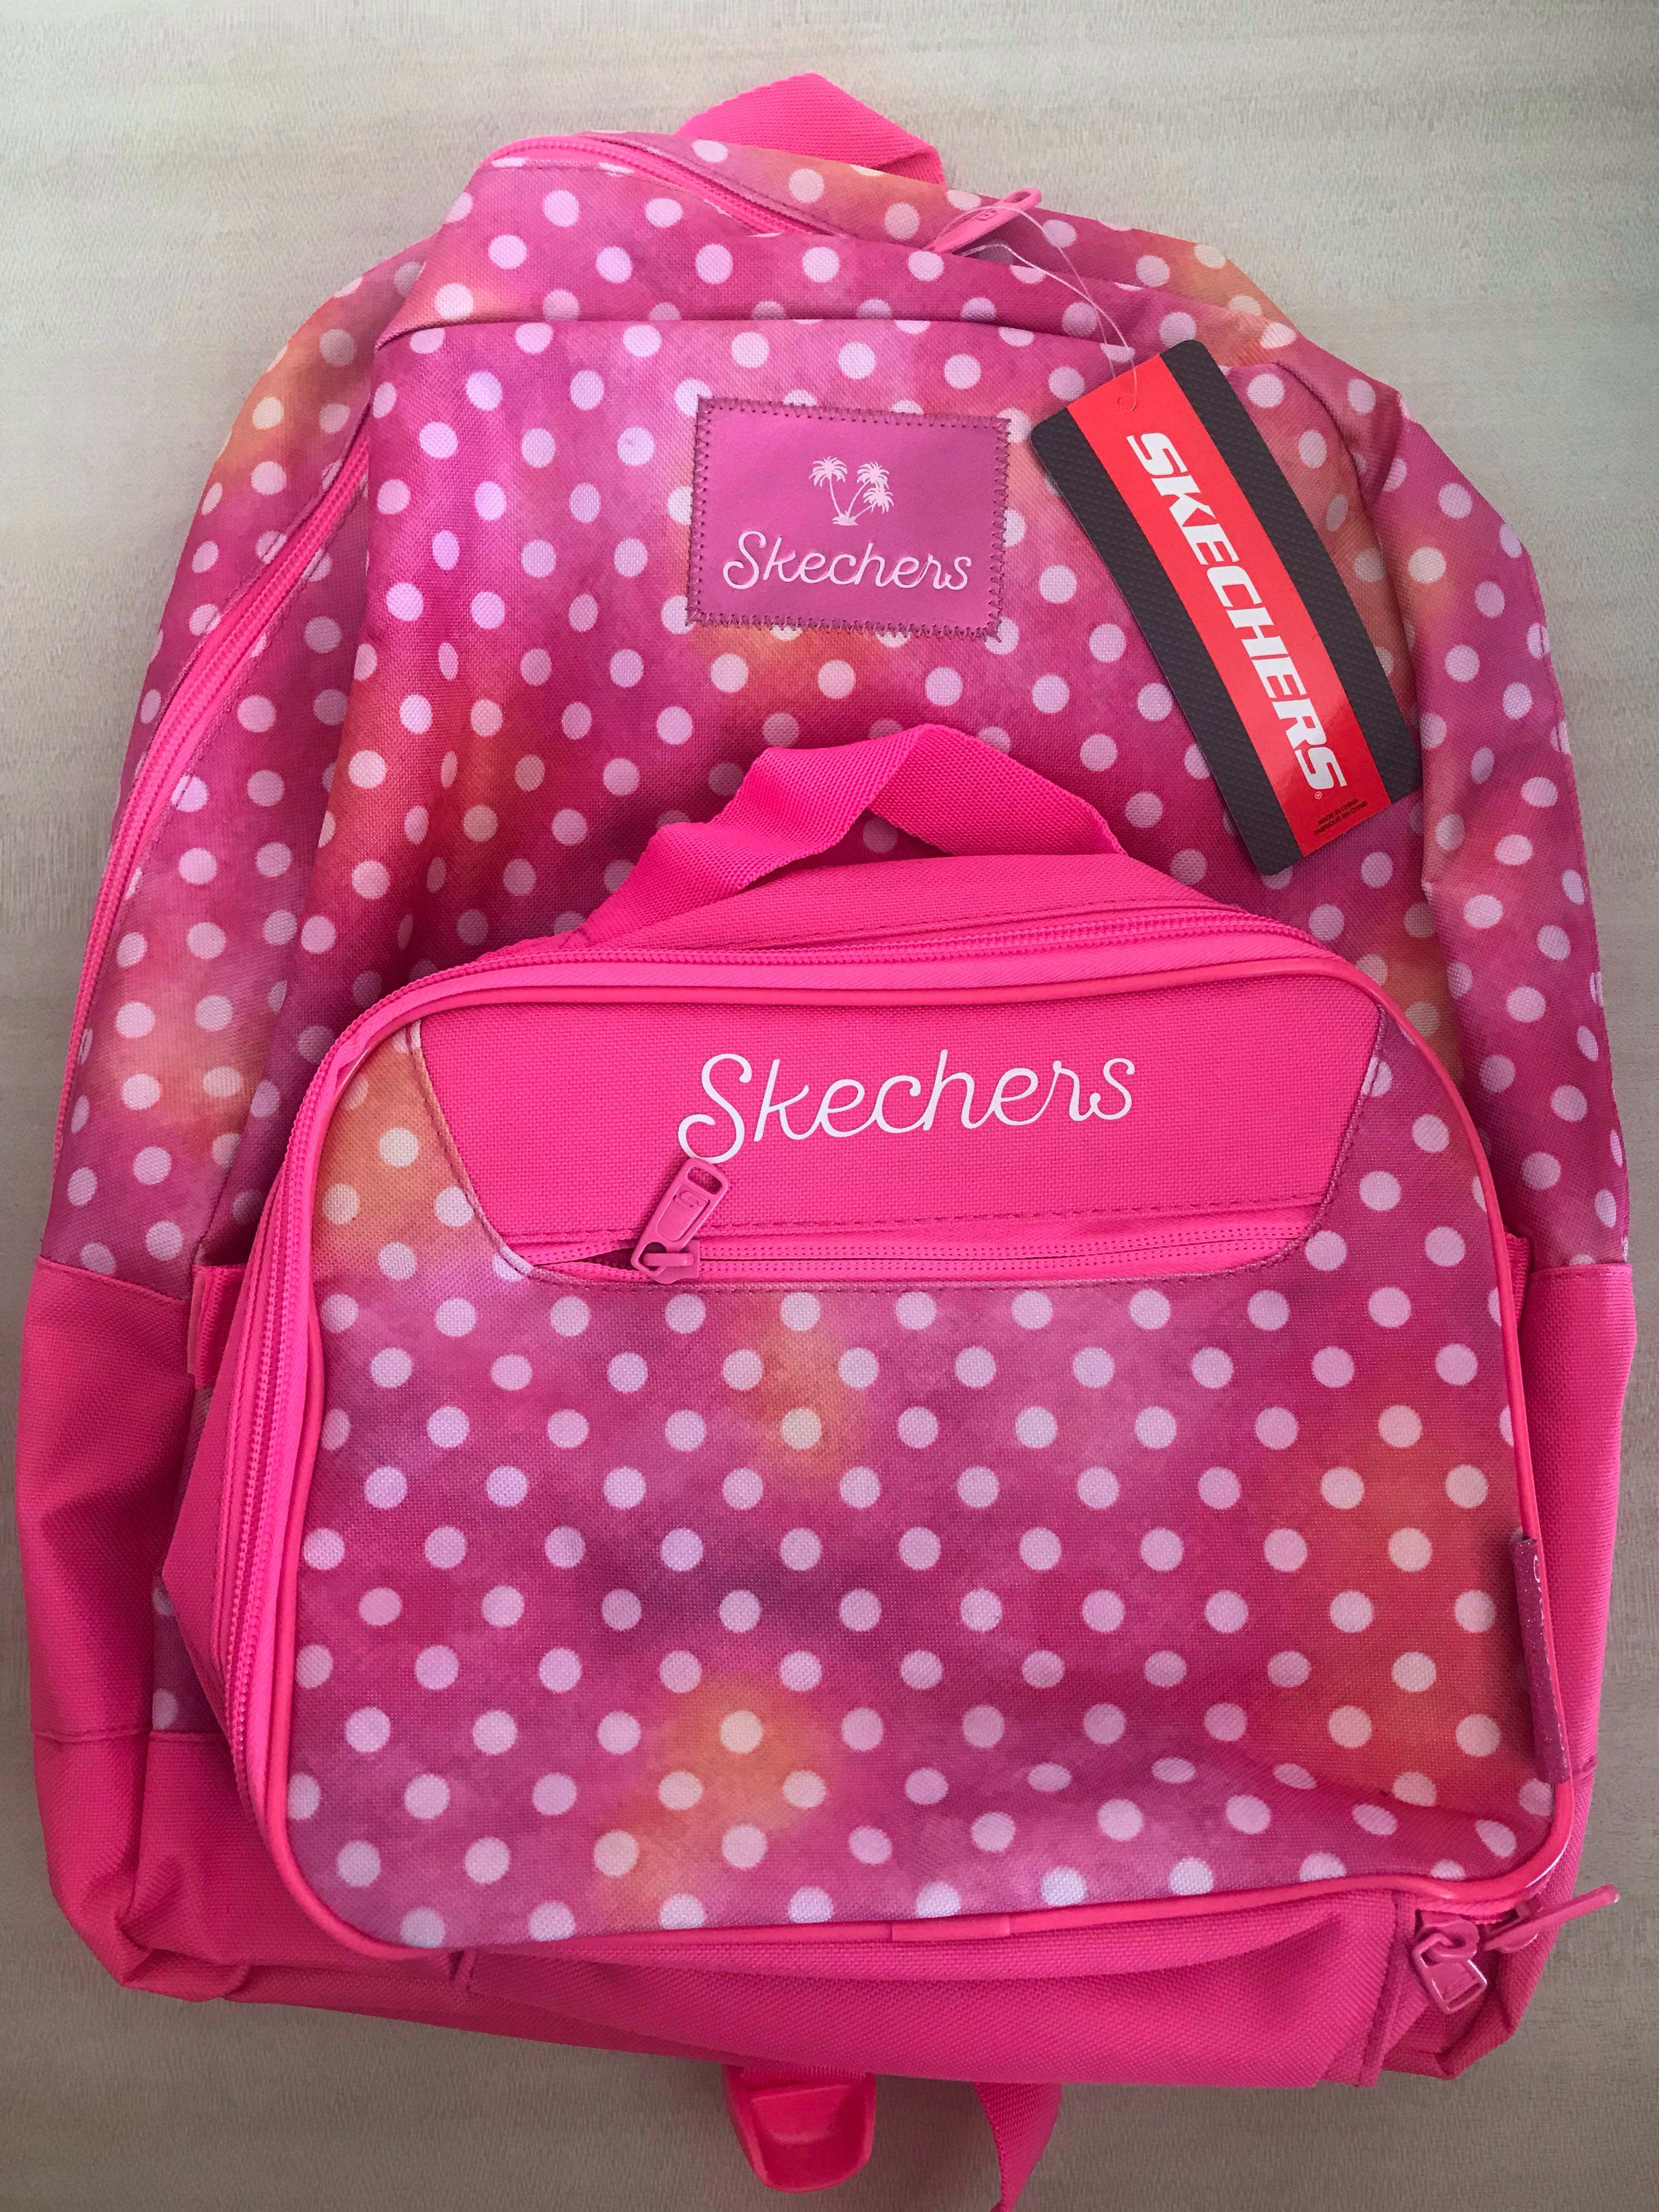 skechers school bags